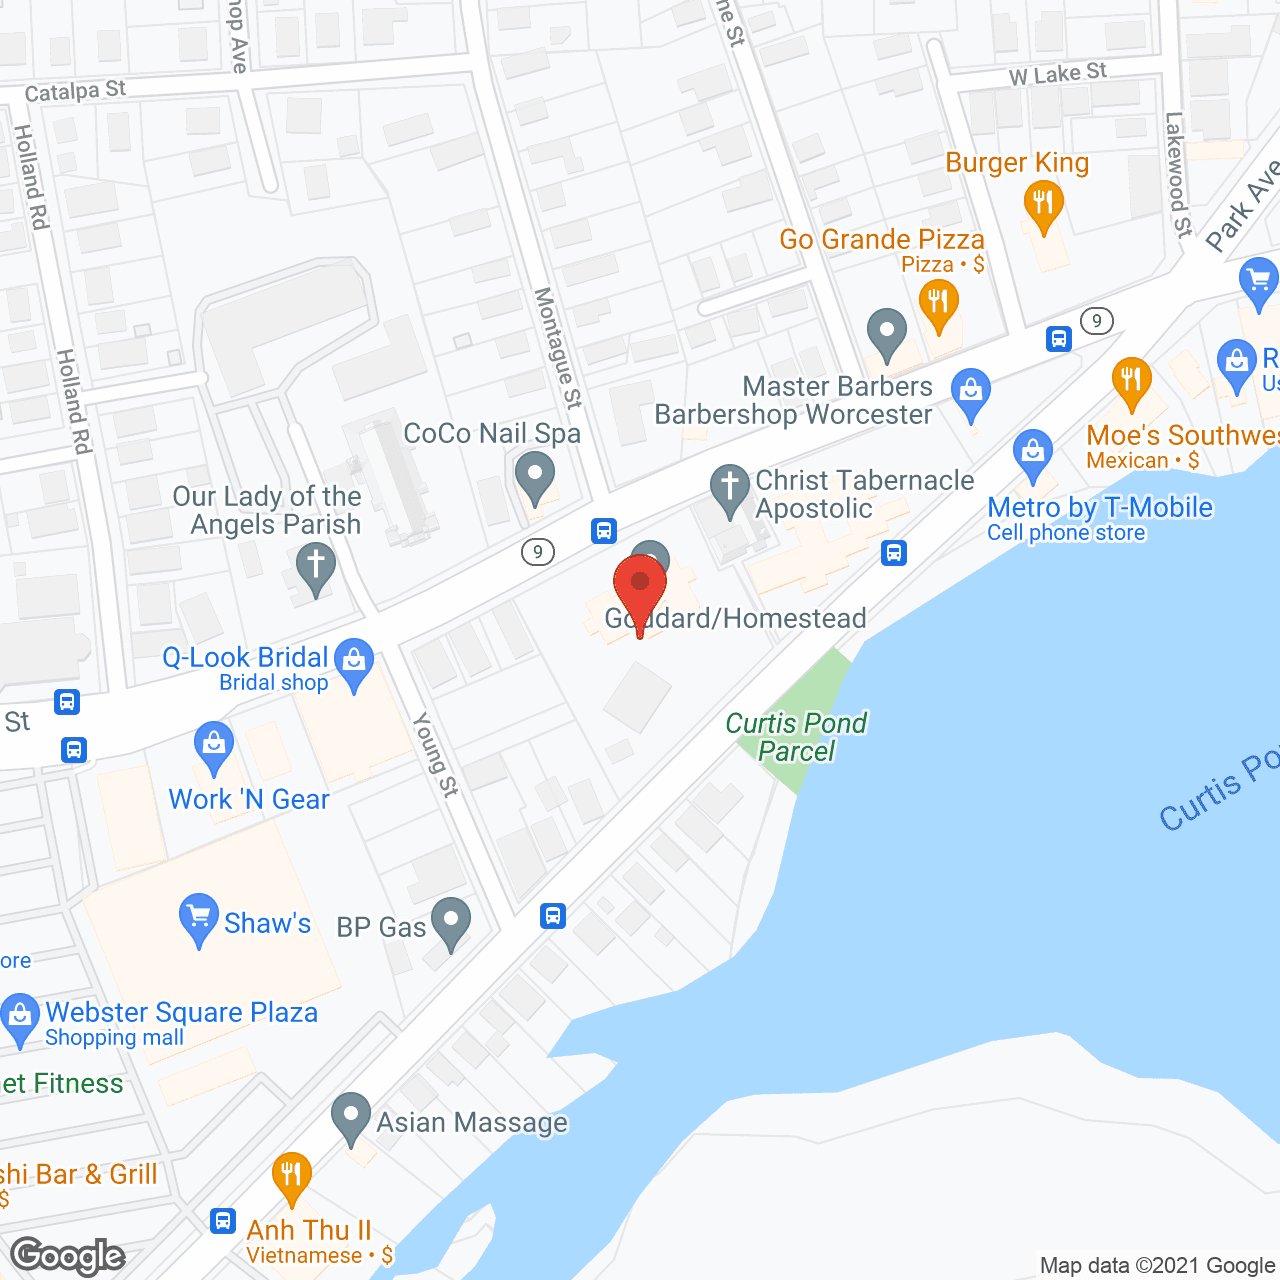 Goddard House in google map